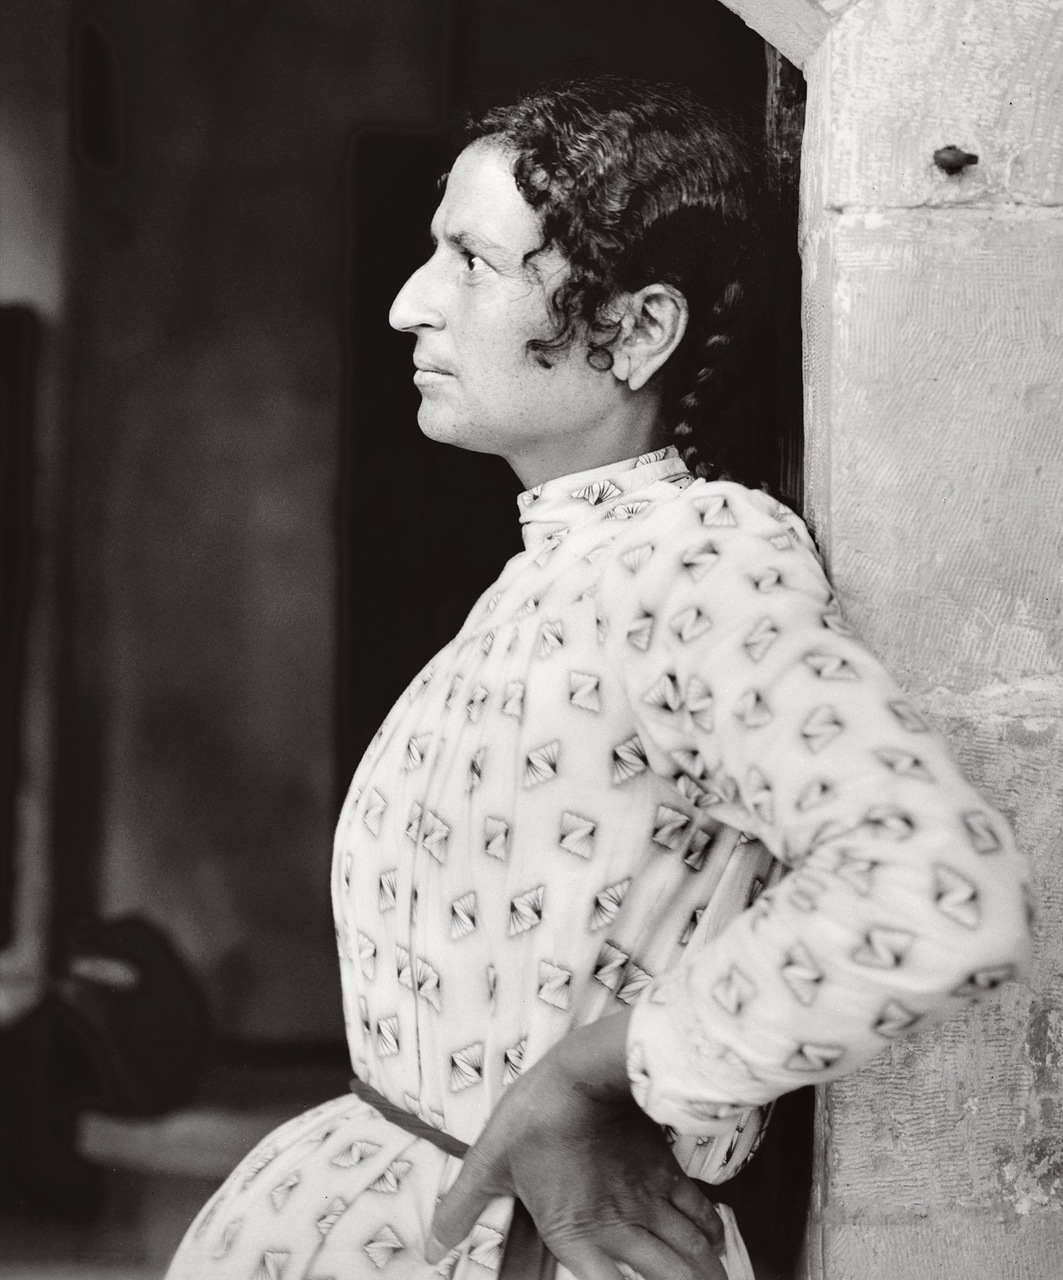 Самаритянка из Наблуса, Палестина. 1900-1920